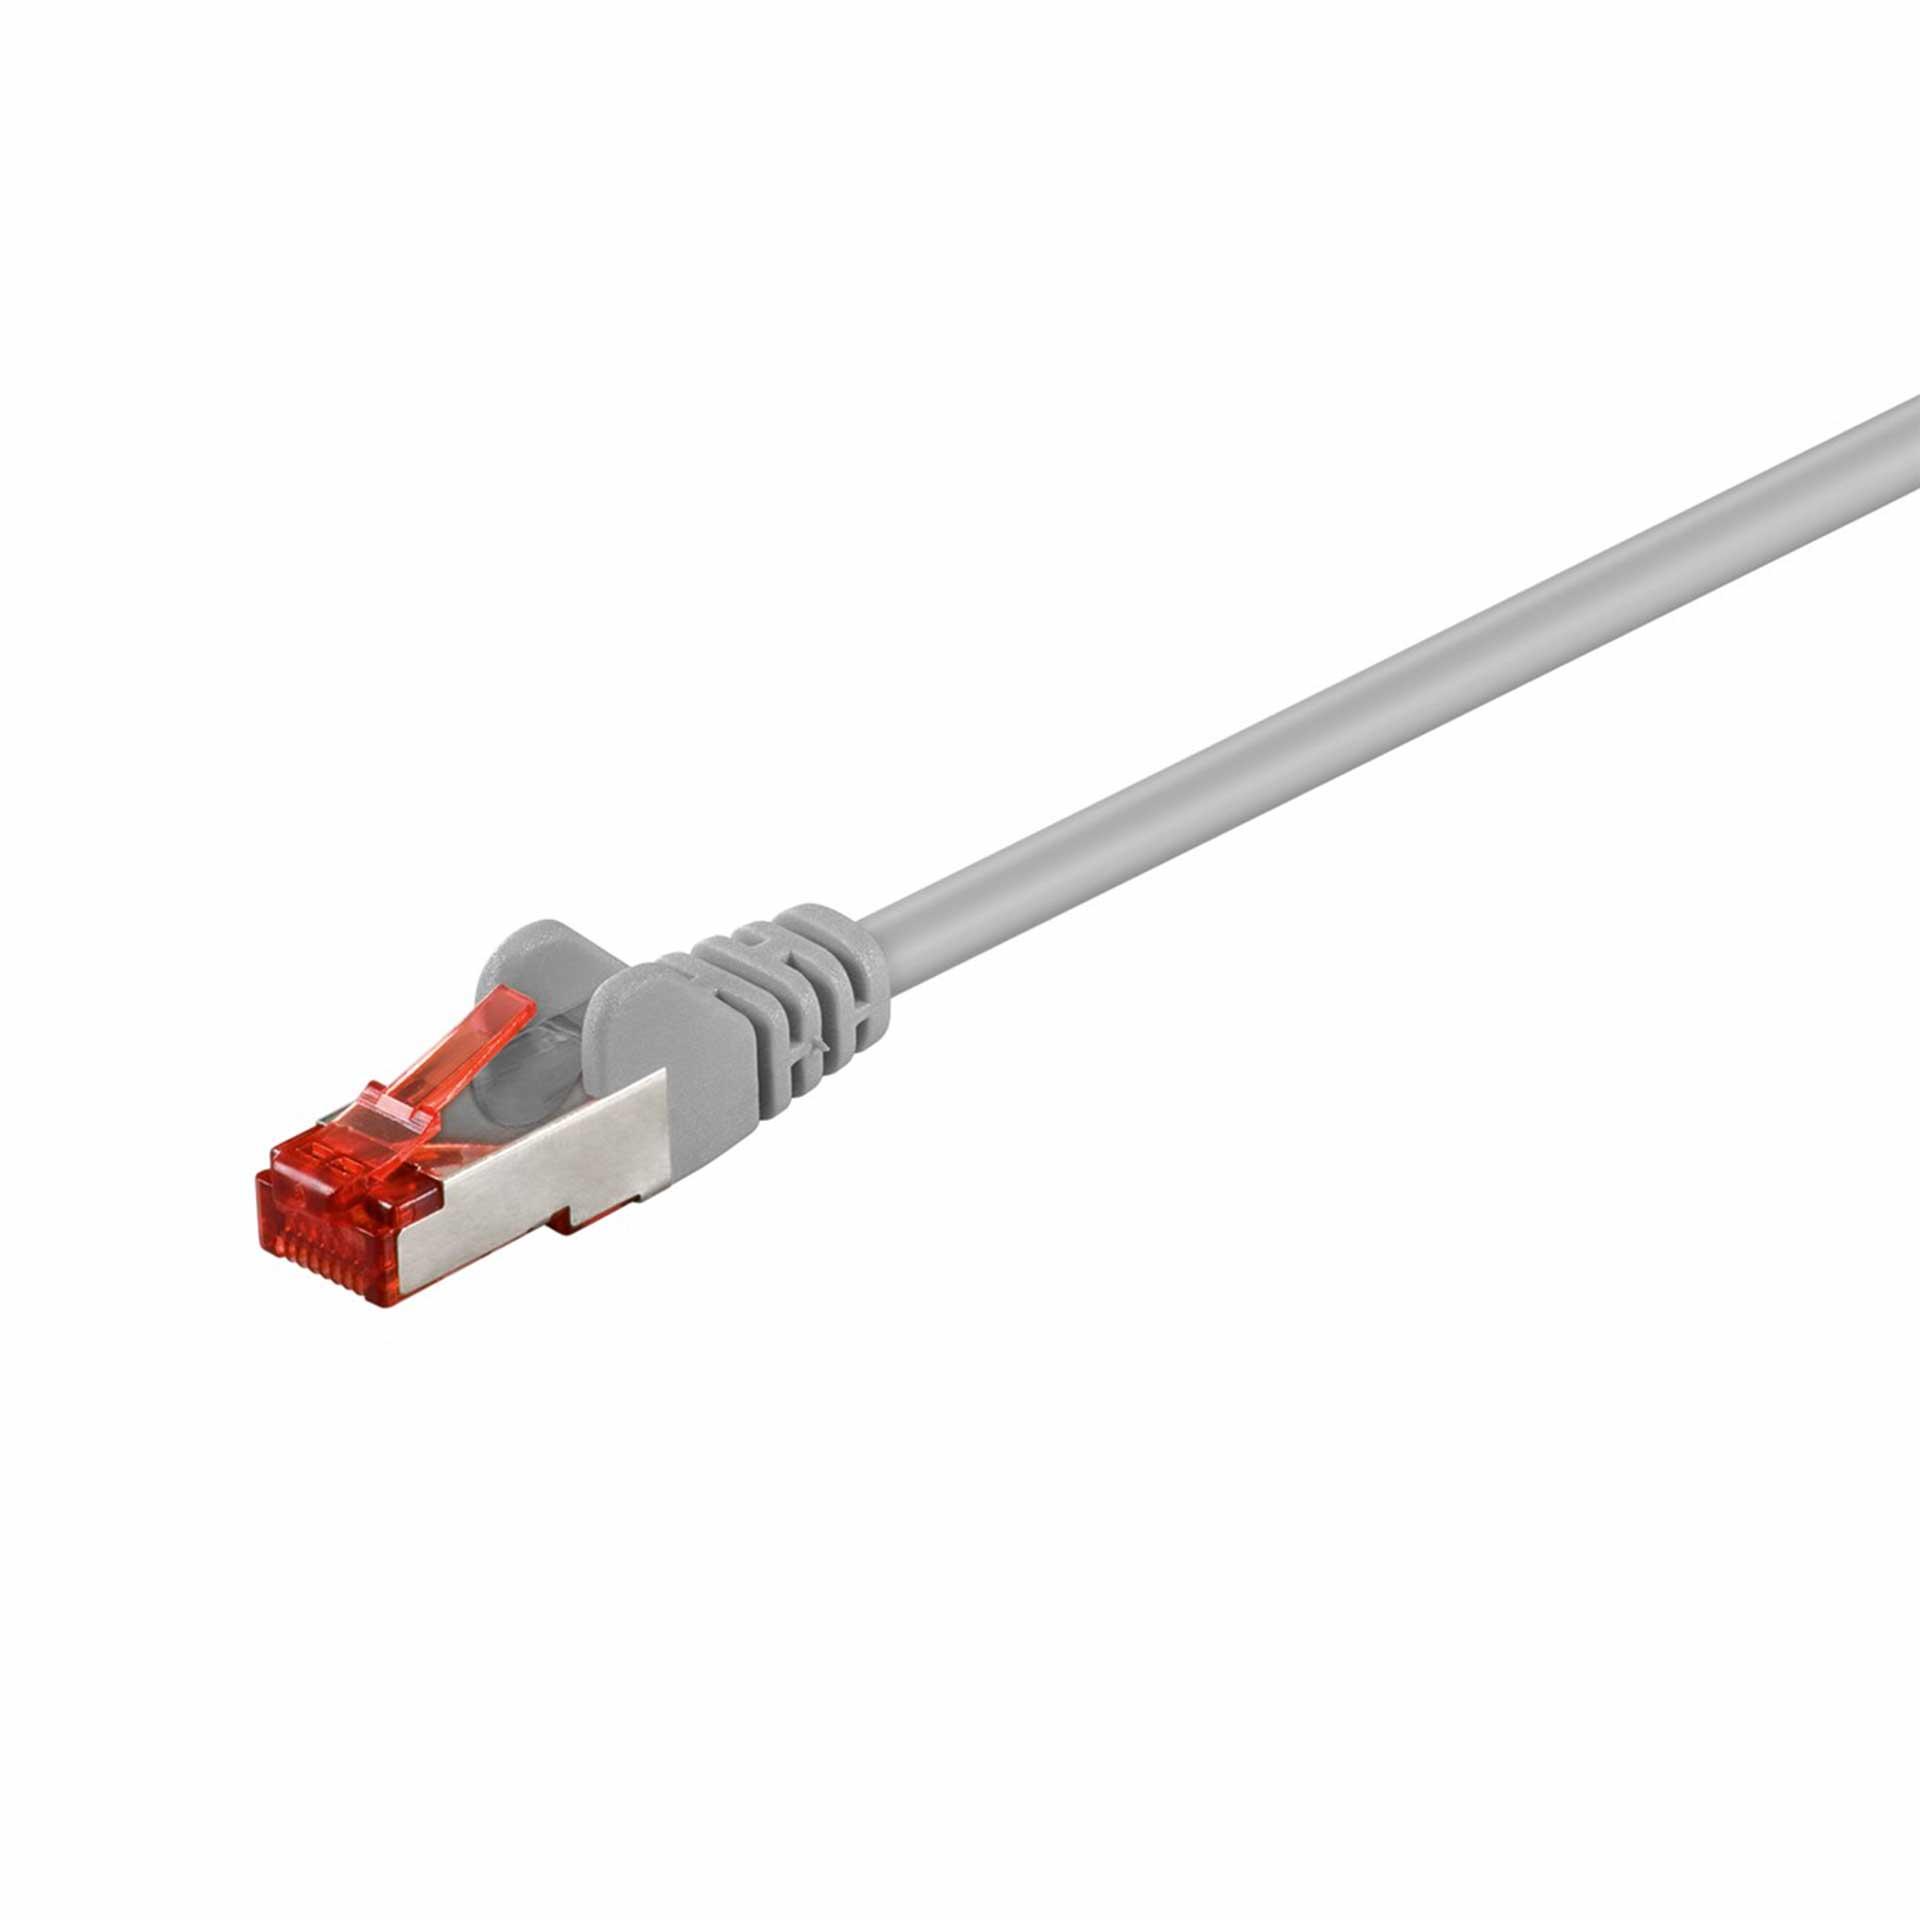 CAT 6 câble de raccordement S/FTP (PiMF), 25000mm, LSZH sans halogène, gris